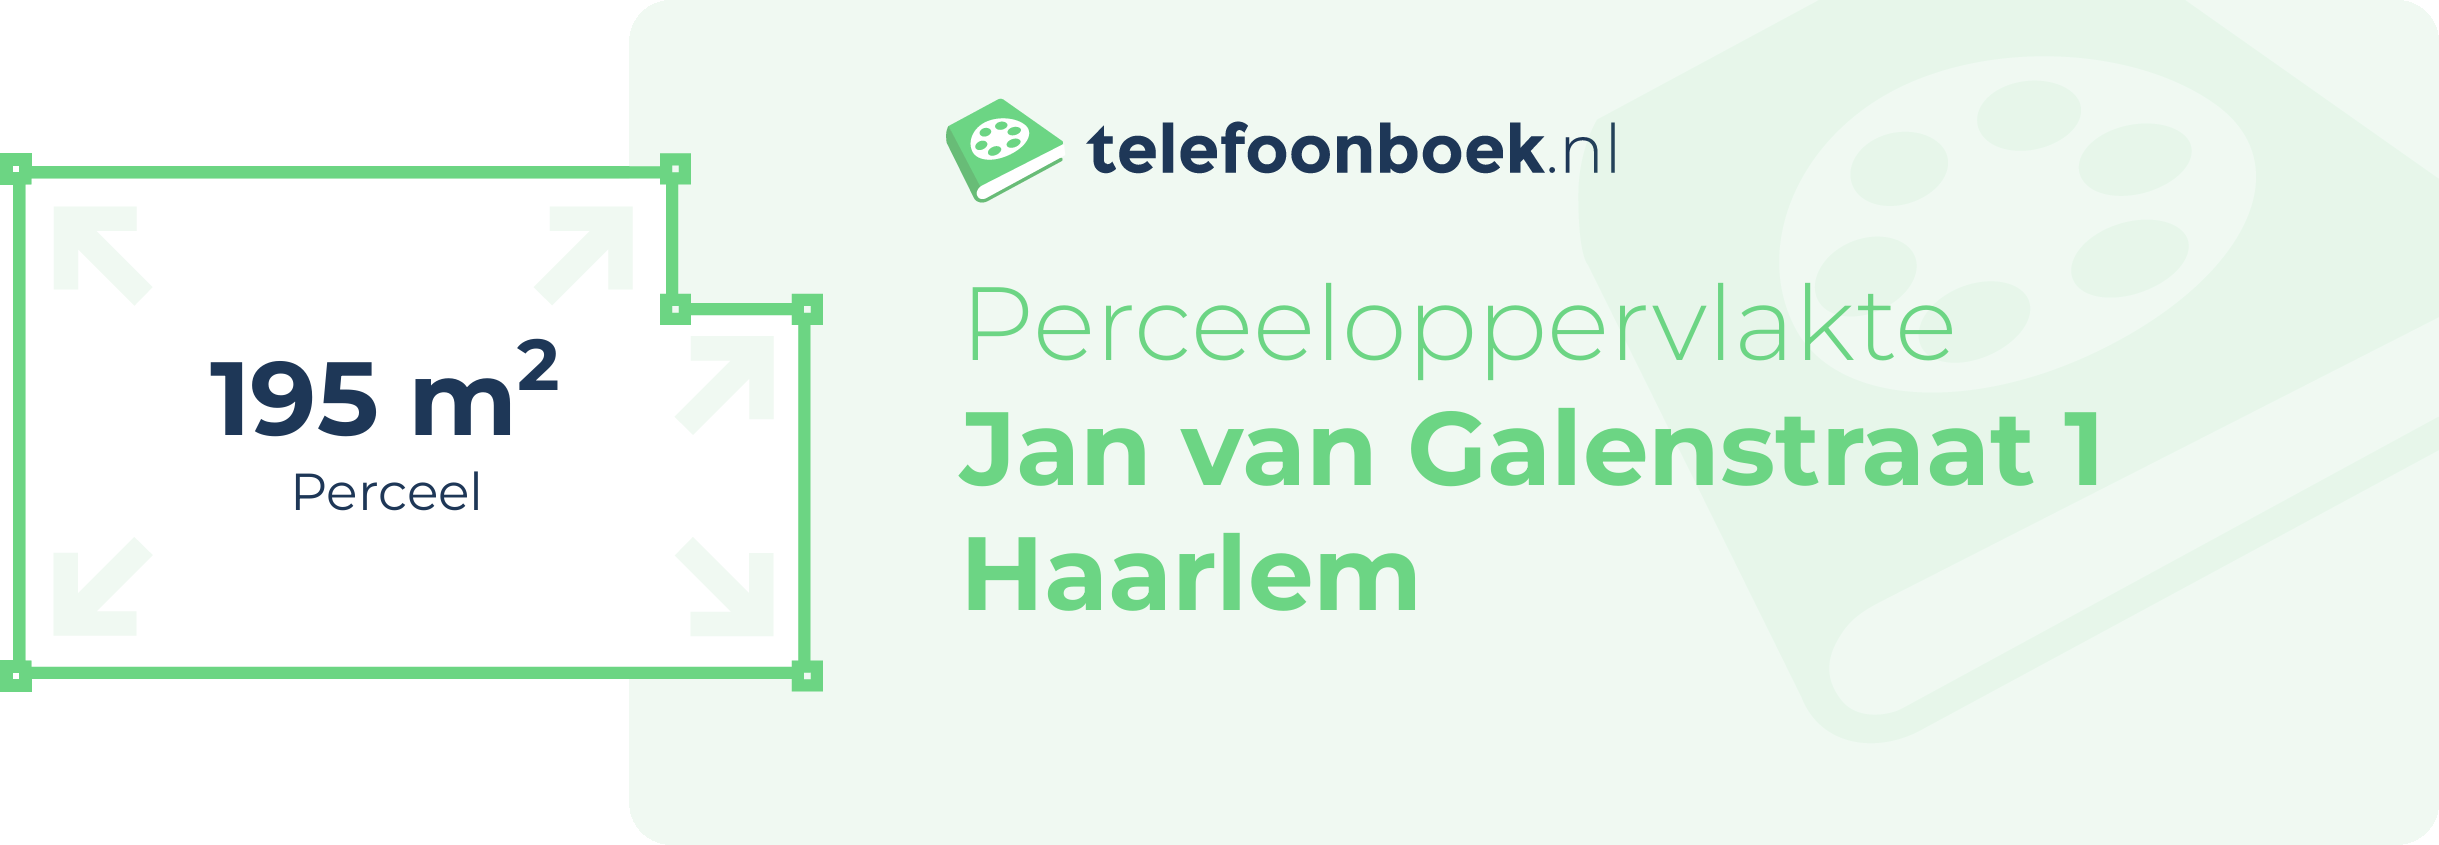 Perceeloppervlakte Jan Van Galenstraat 1 Haarlem